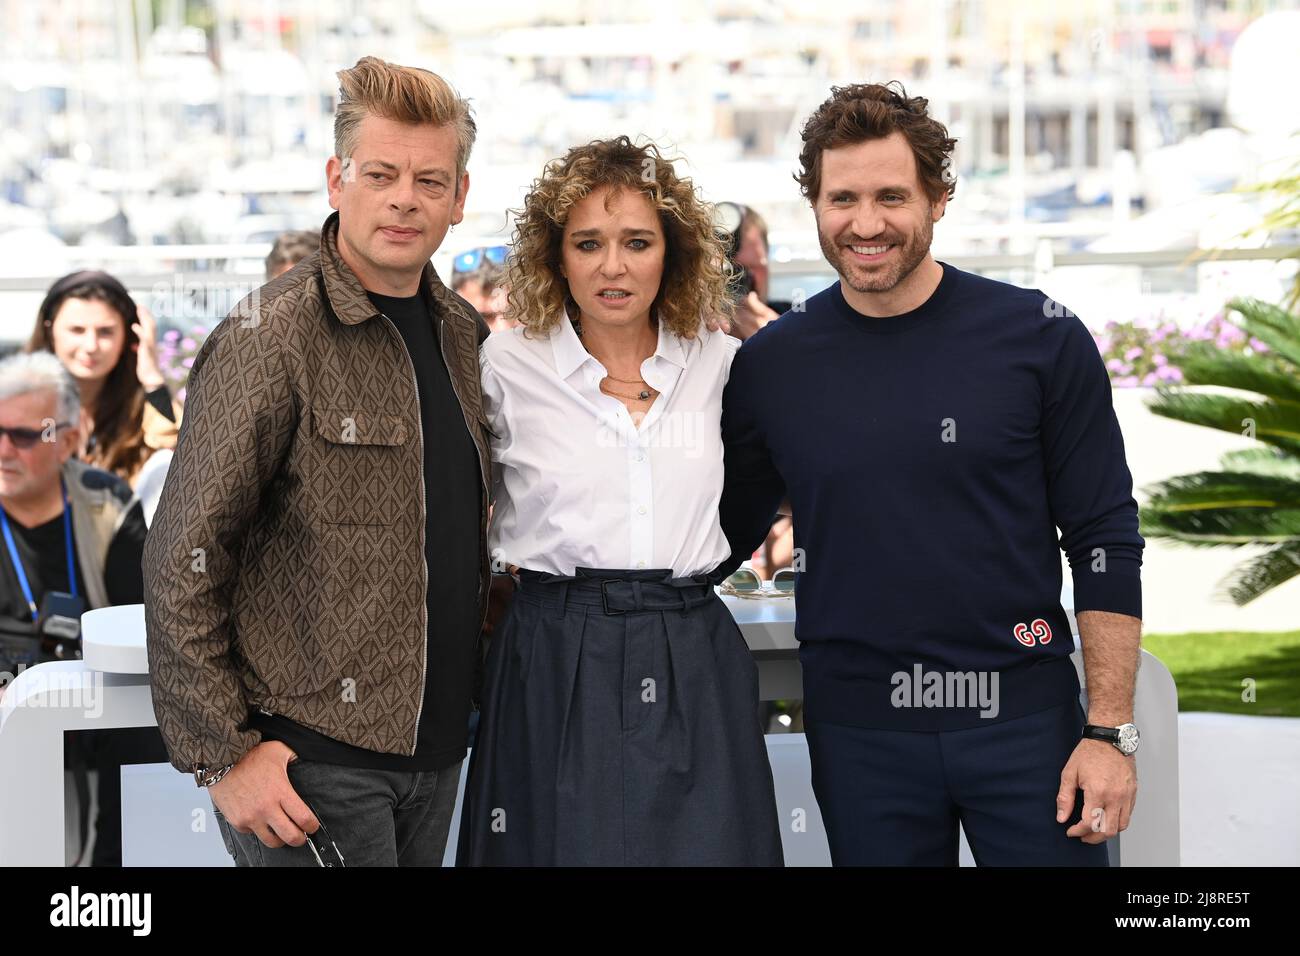 (De gauche à droite) Benjamin Biolay, Valeria Golino et Edgar Ramirez à l'ONU certains considèrent la photocall du jury lors du Festival de Cannes 75th à Cannes, France. Date de la photo: Mercredi 18 mai 2022. Banque D'Images